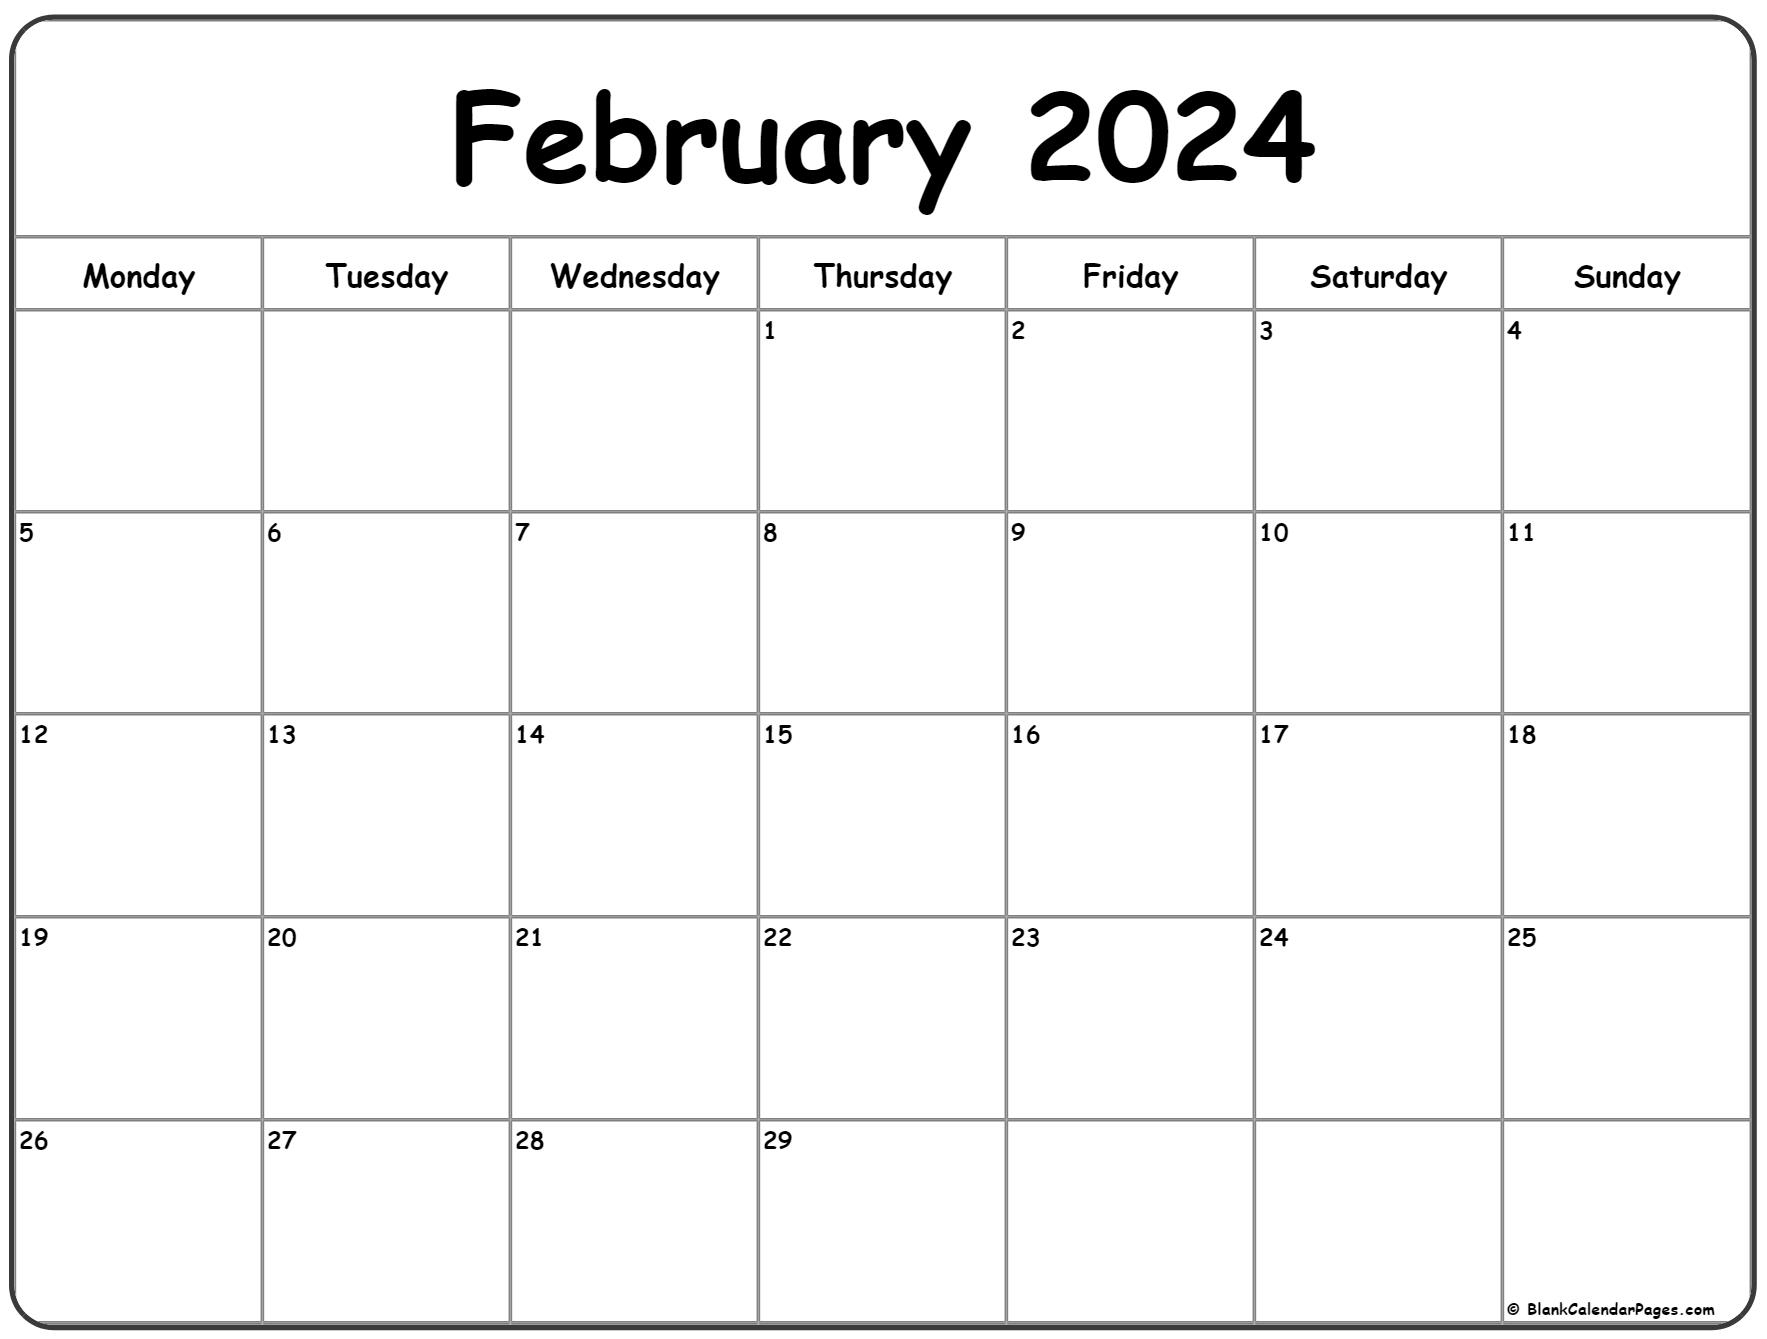 February 2024 Monday Calendar | Monday To Sunday for February 2024 Calendar Printable